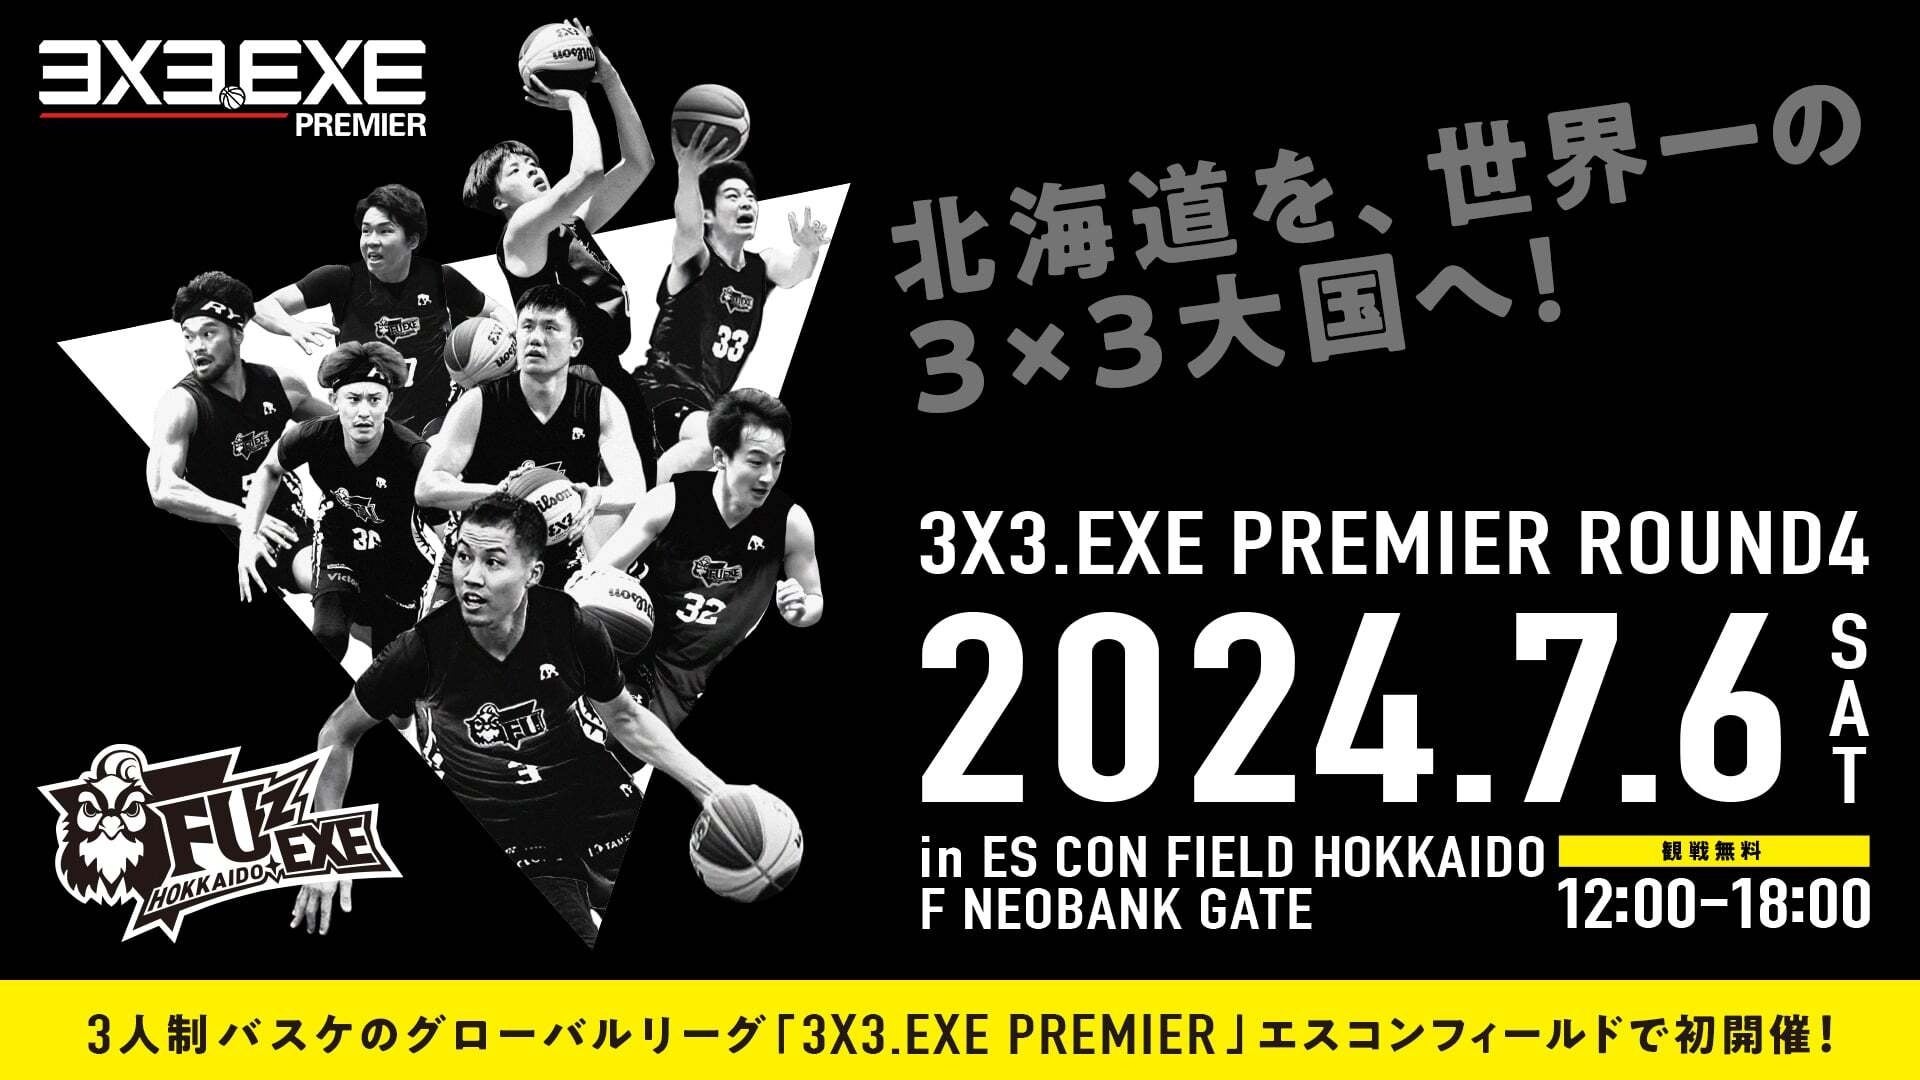 【RESULT】UTSUNOMIYA BREX.EXEが、今年1回目のALL CONFERENCE制覇！